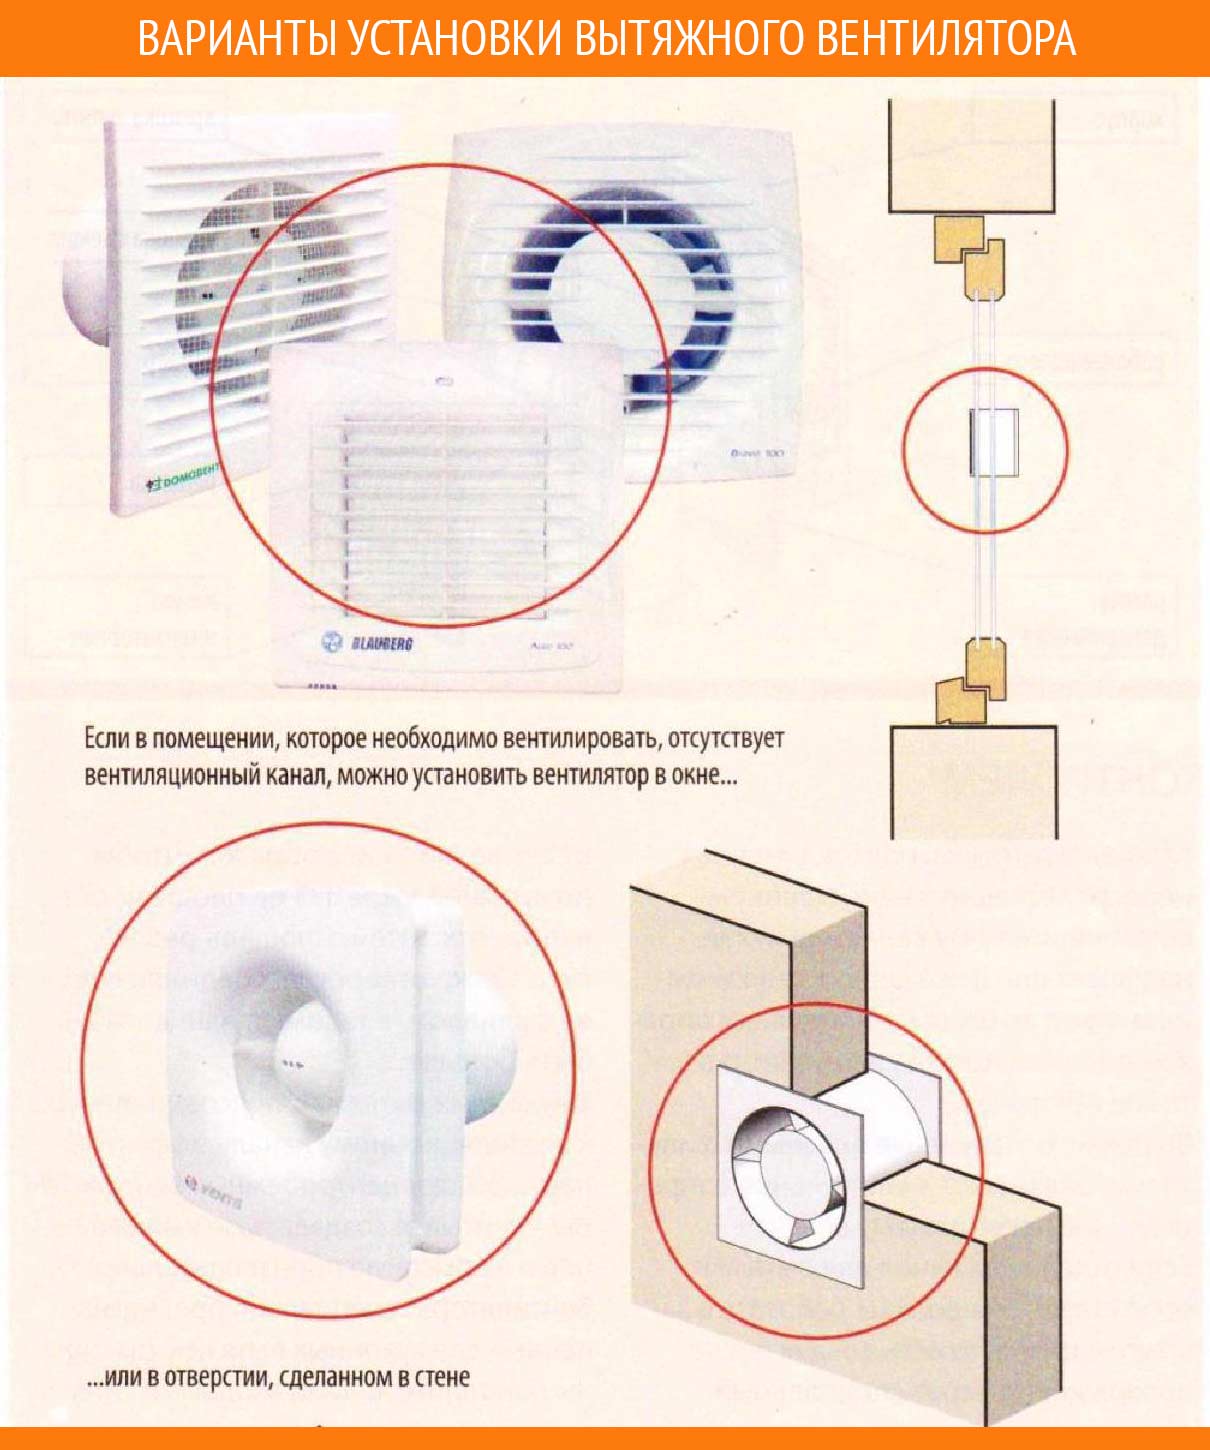 Подключение вытяжки из ванной через выключатель: зачем это нужно делать, схемы и возможные ошибки